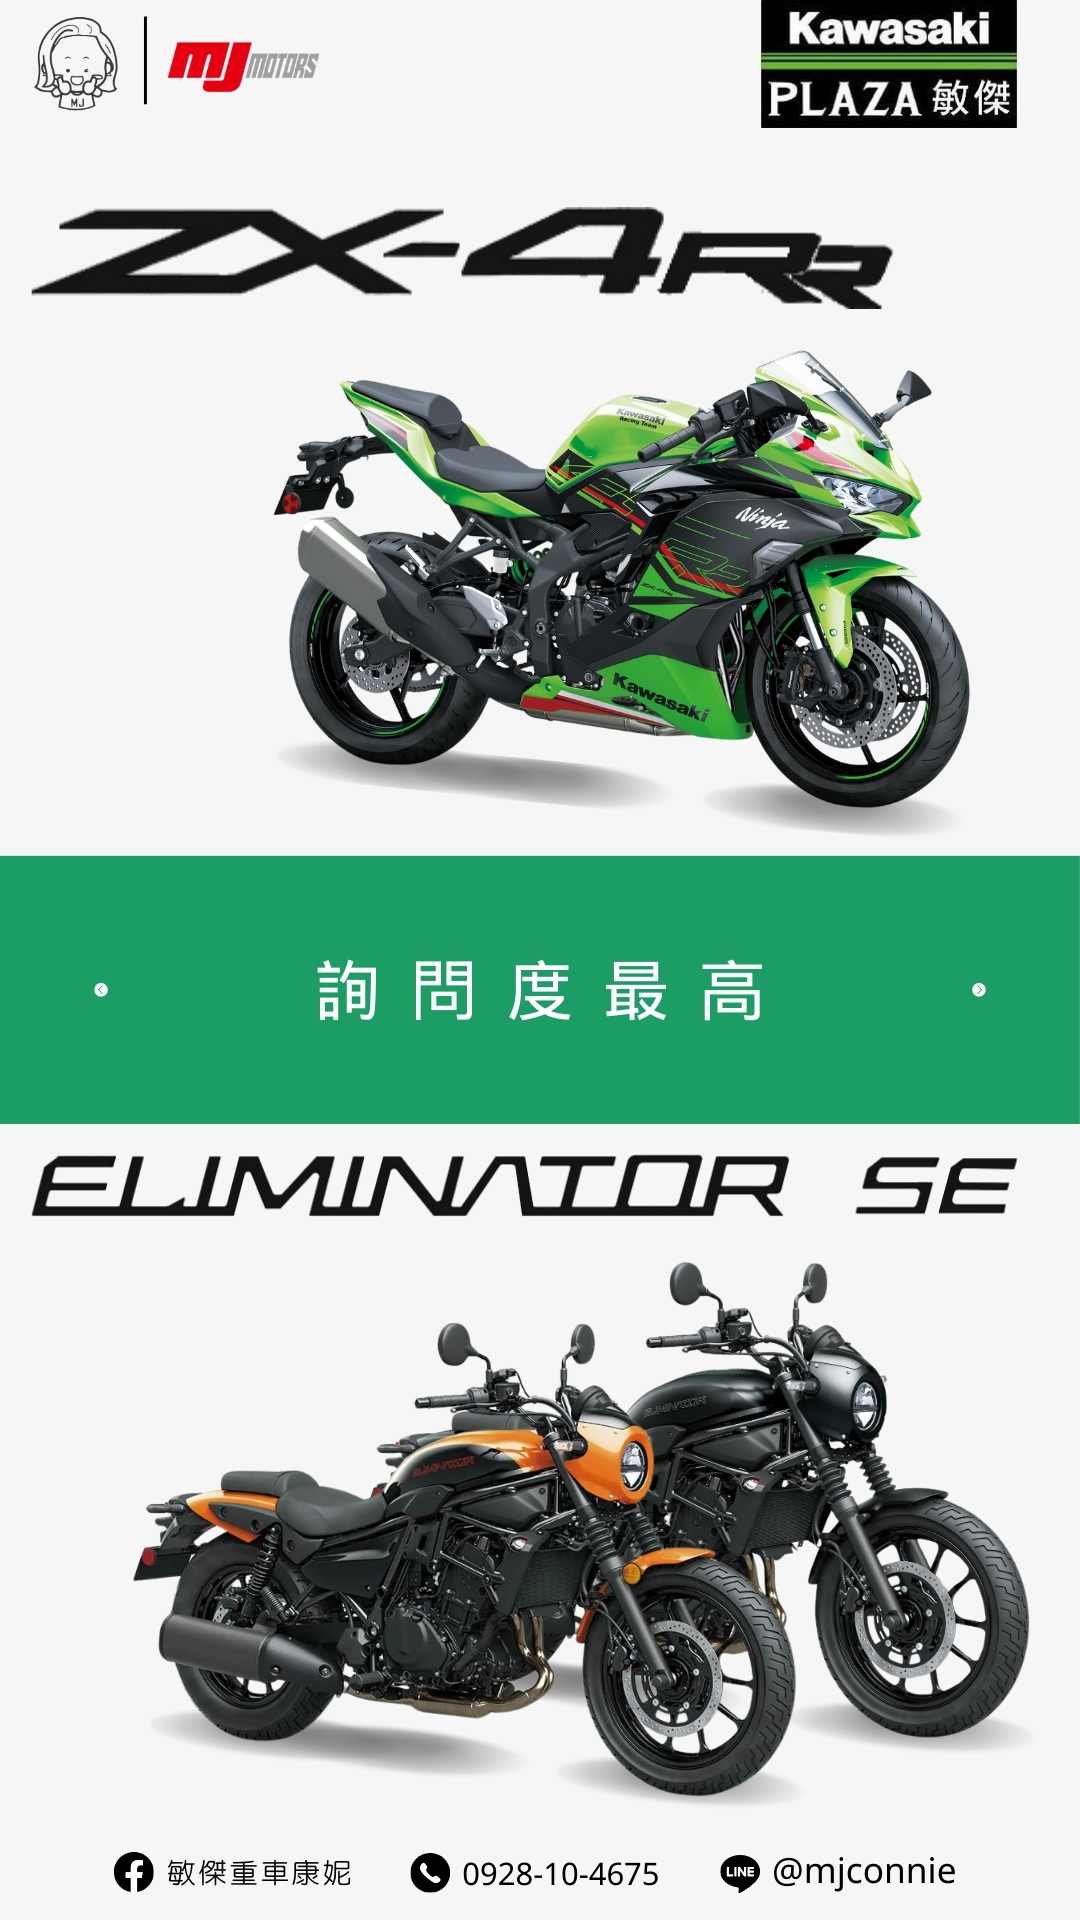 【敏傑車業資深銷售專員 康妮 Connie】Kawasaki ZX-4RR - 「Webike-摩托車市」 『敏傑康妮』Kawasaki ZX-4RR & Eliminator 500SE 持需接單預訂中 把握現在的好康～ 月付 63xx 起